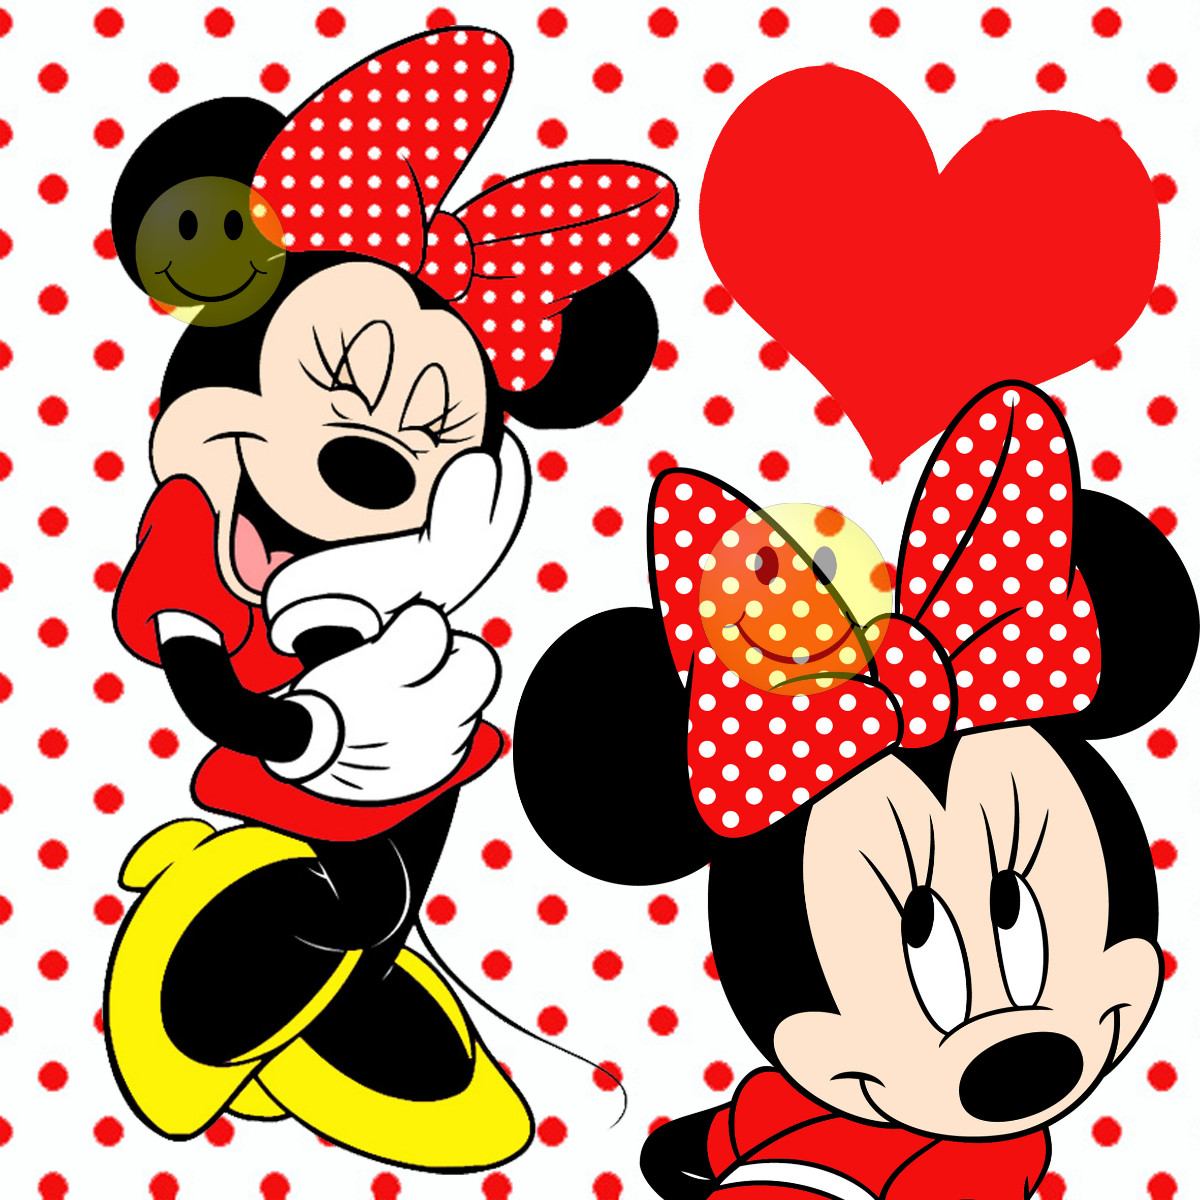 Imagenes de Minnie Mouse roja - Imagui